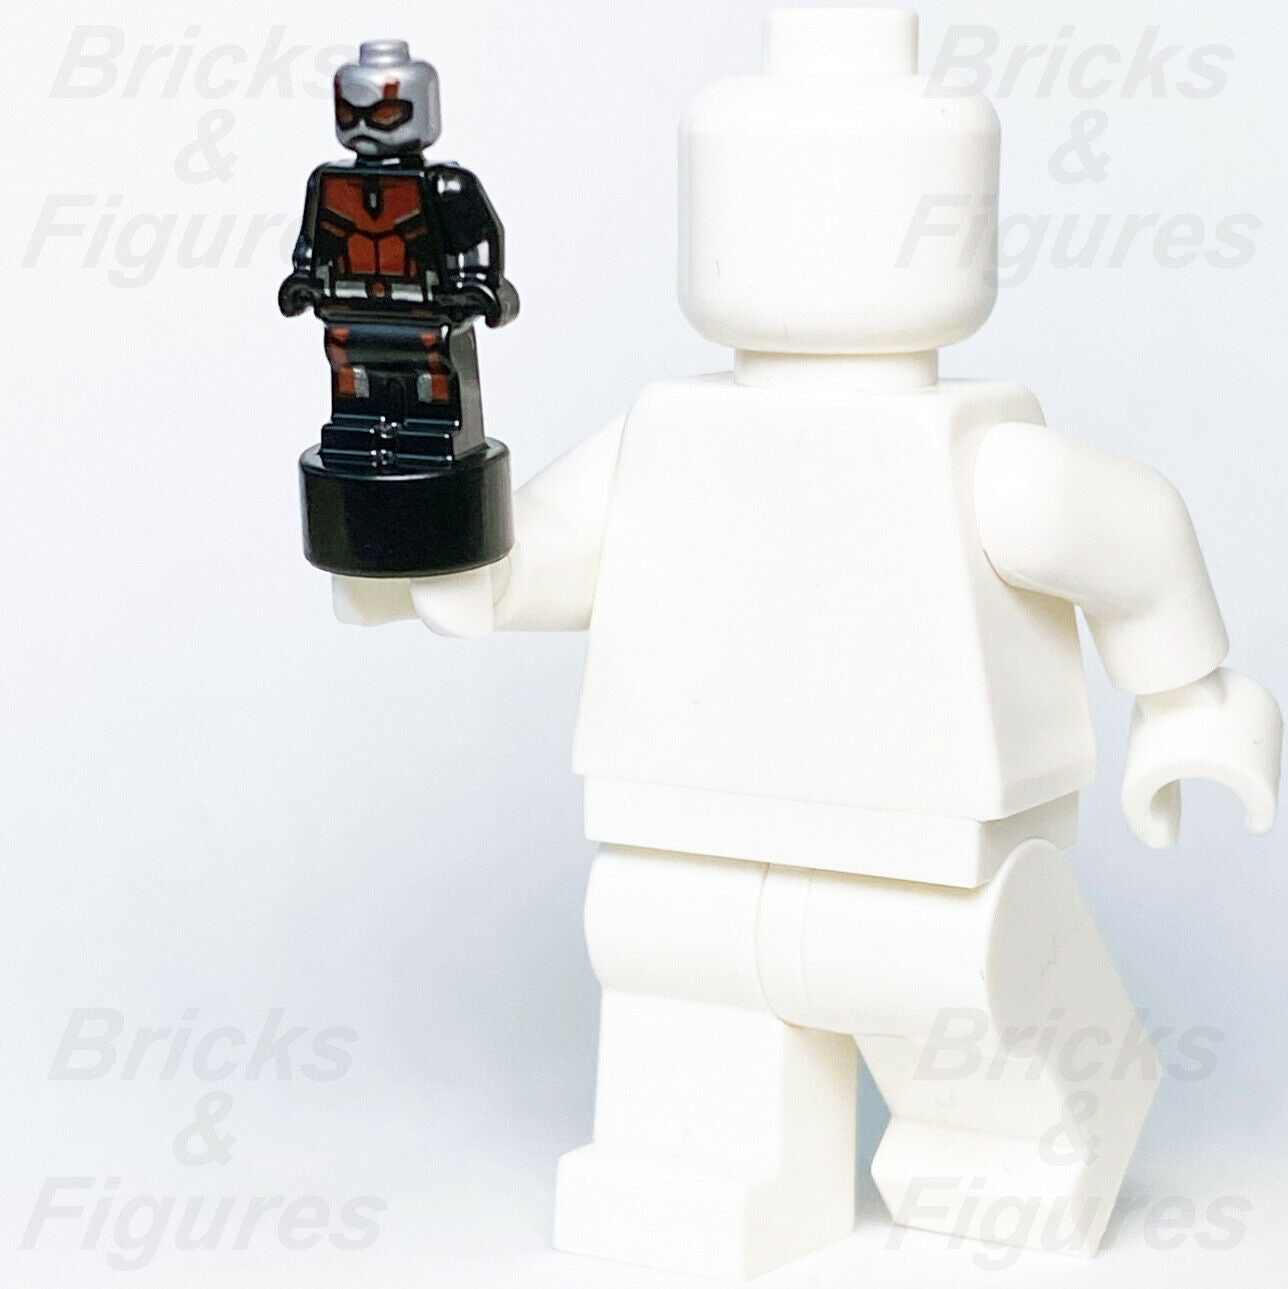 Marvel Super Heroes LEGO "Mini" Ant-Man Scott Lang Small 76192 Avengers Endgame - Bricks & Figures